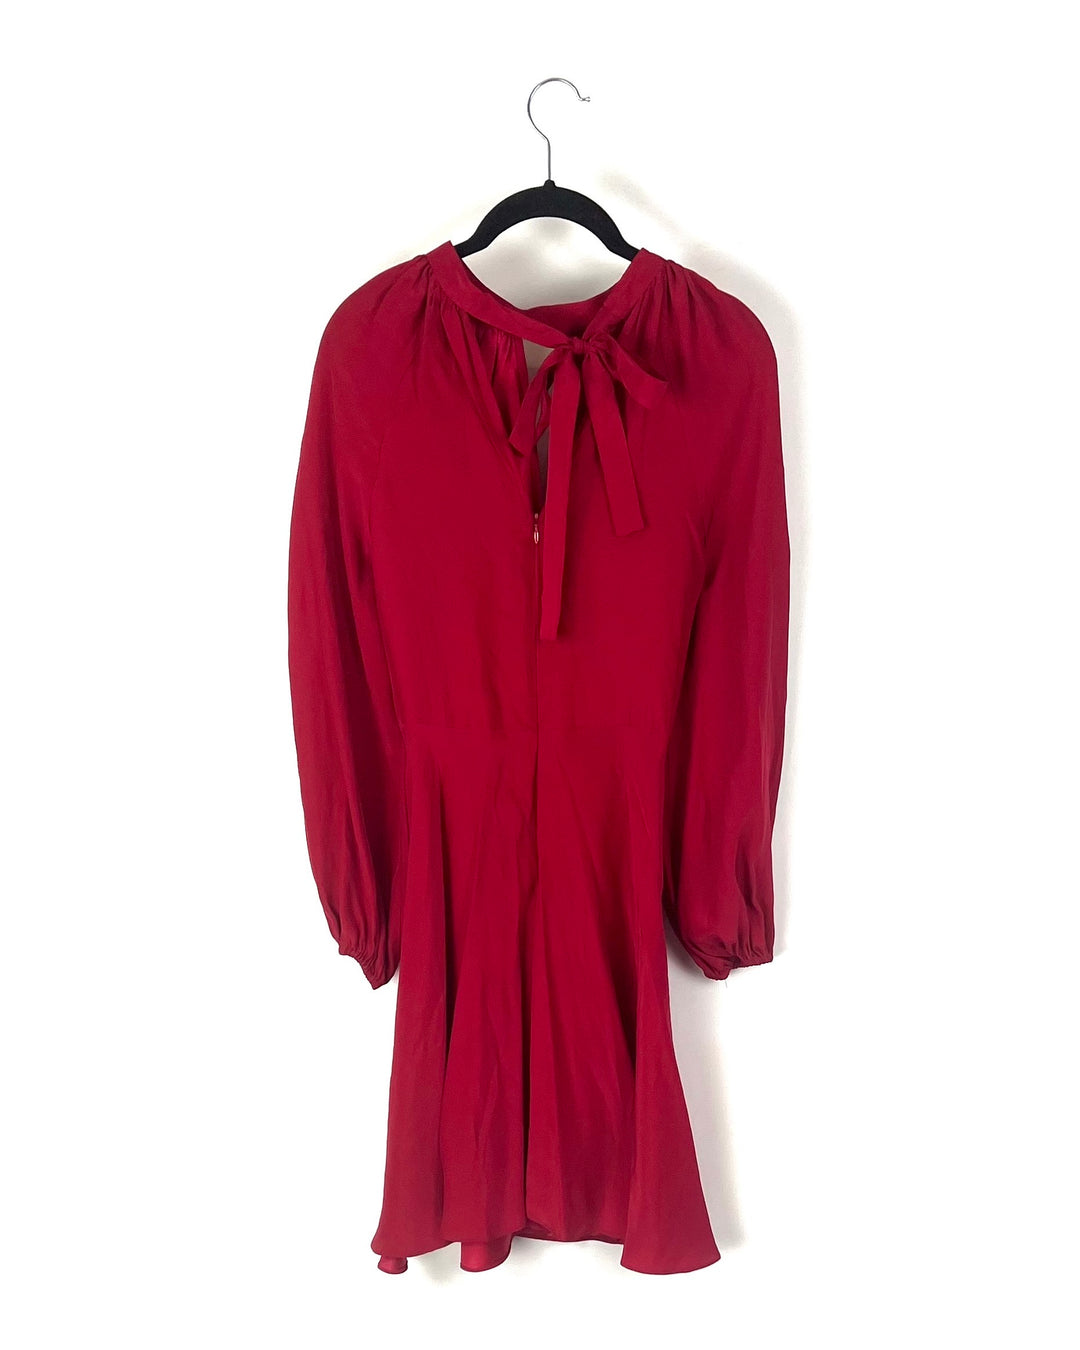 Red Lightweight Dress - Small